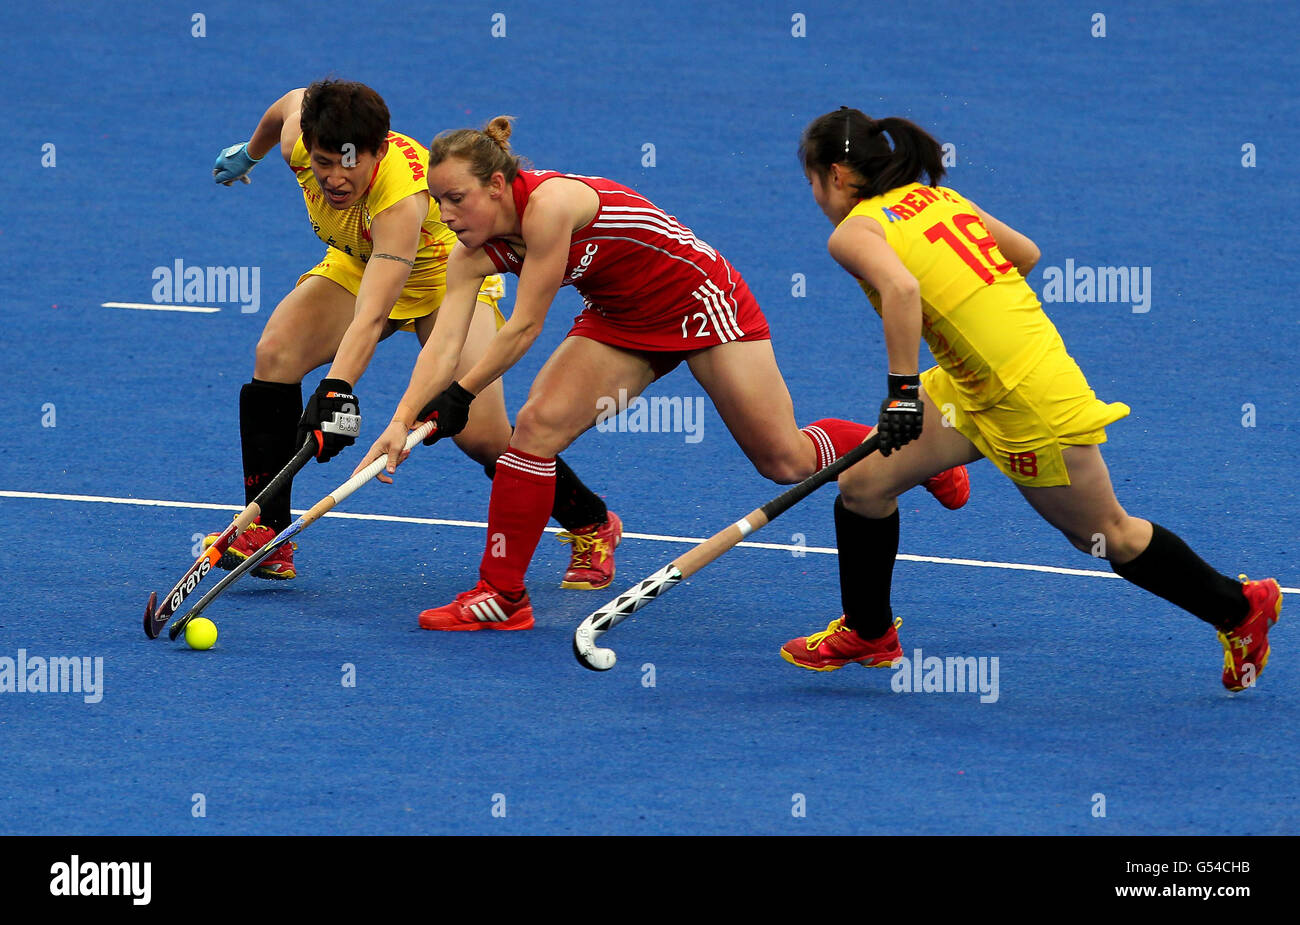 Chloe Rogers en Grande-Bretagne (au centre) et Mengyu Wang en Chine (à gauche) et Ting Huang (à droite) se battent pour le ballon lors du tournoi de hockey sur invitation Visa International à la Riverbank Arena, à Londres. Banque D'Images